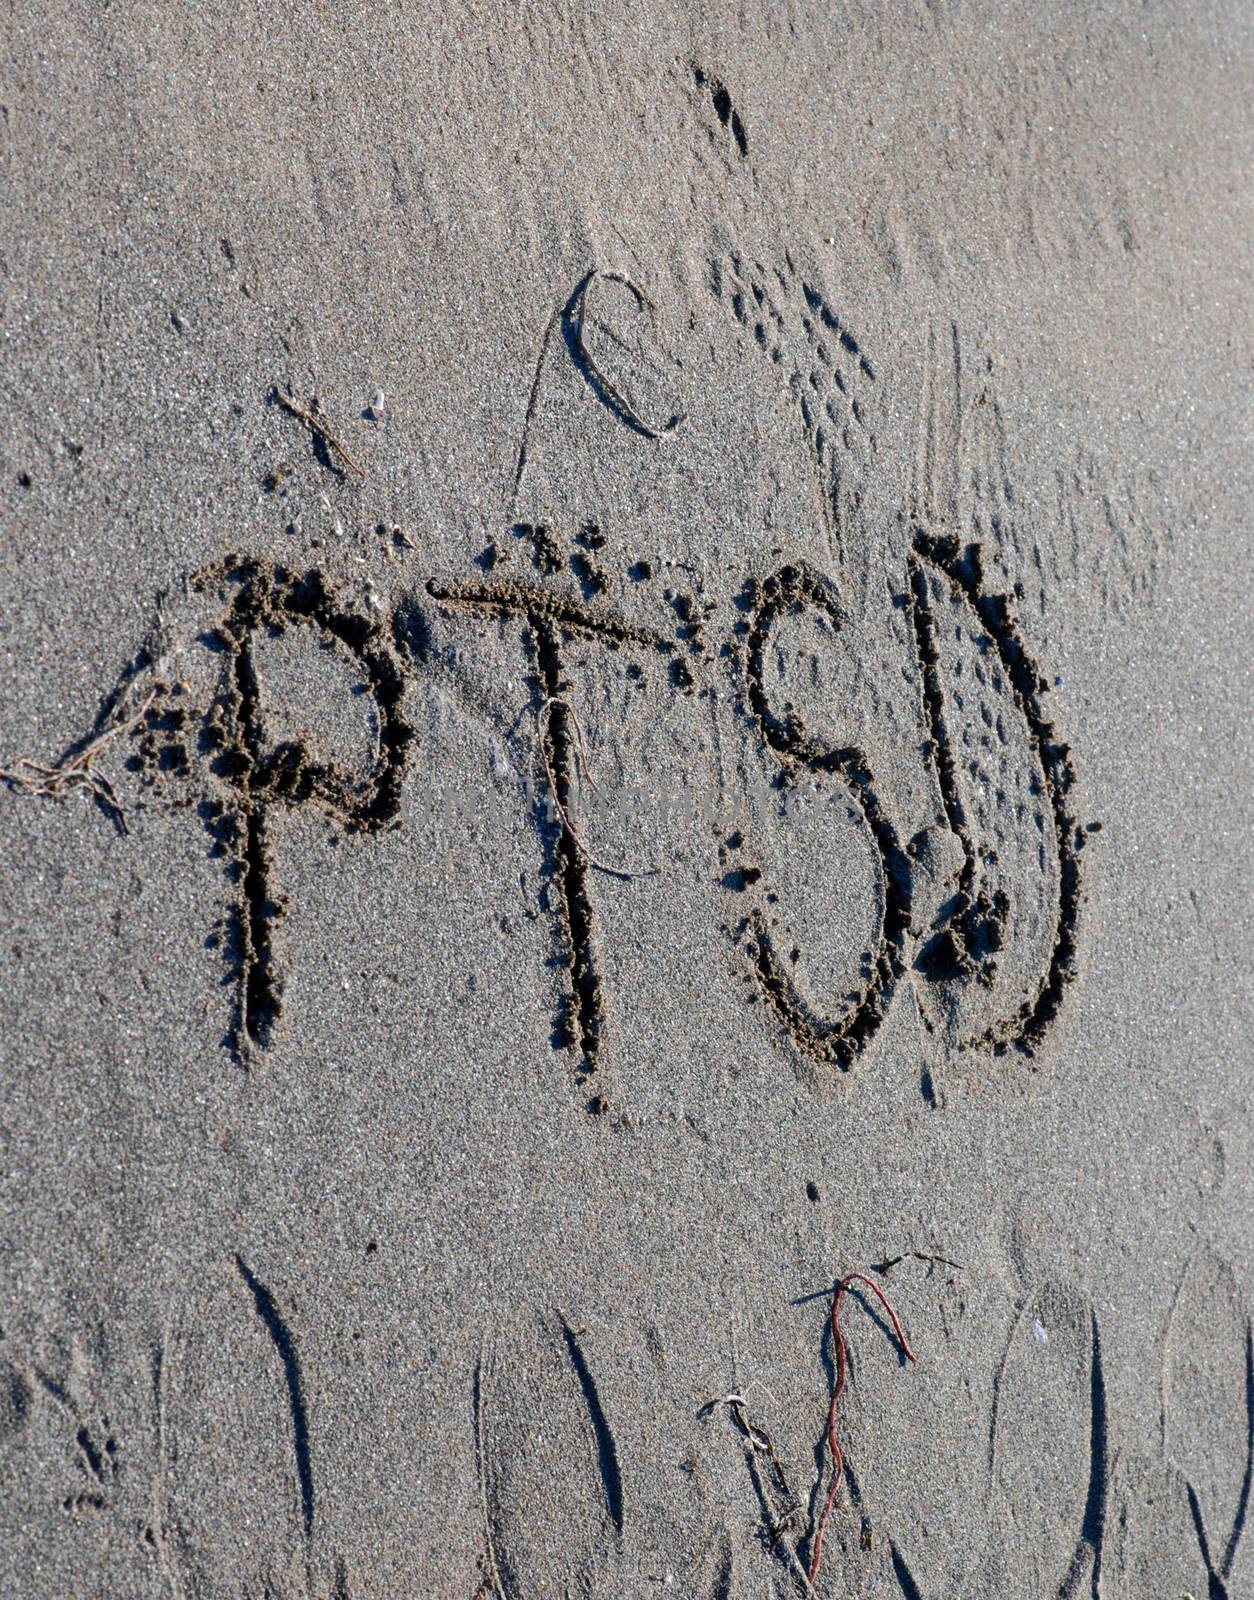 ptsd text on a beach sand, mental health concept